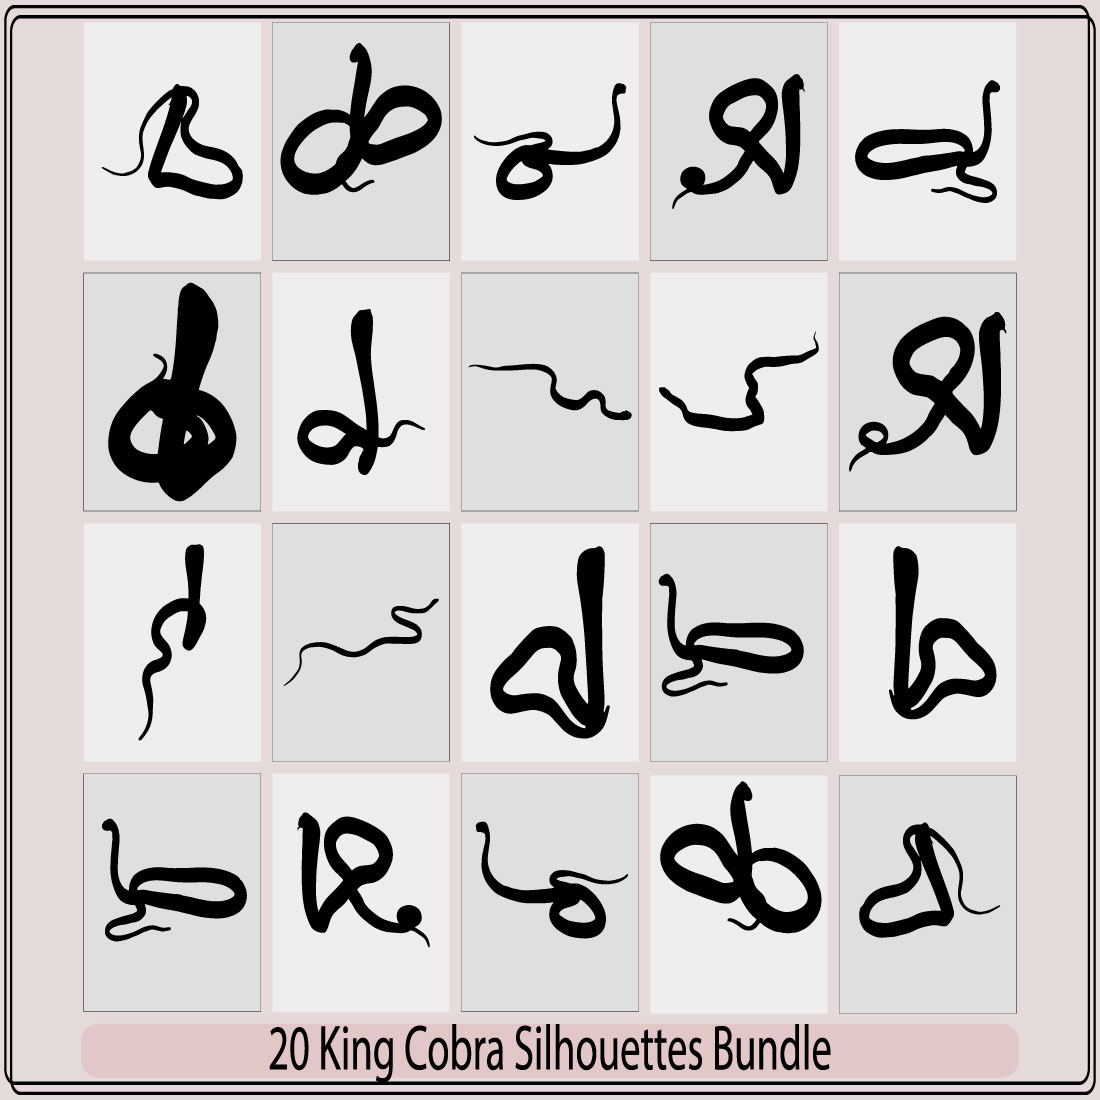 King Cobra silhouette icons,Cobra snake,King cobra silhouette,Black king cobra logo template design,King Cobra snake logo design vector cover image.